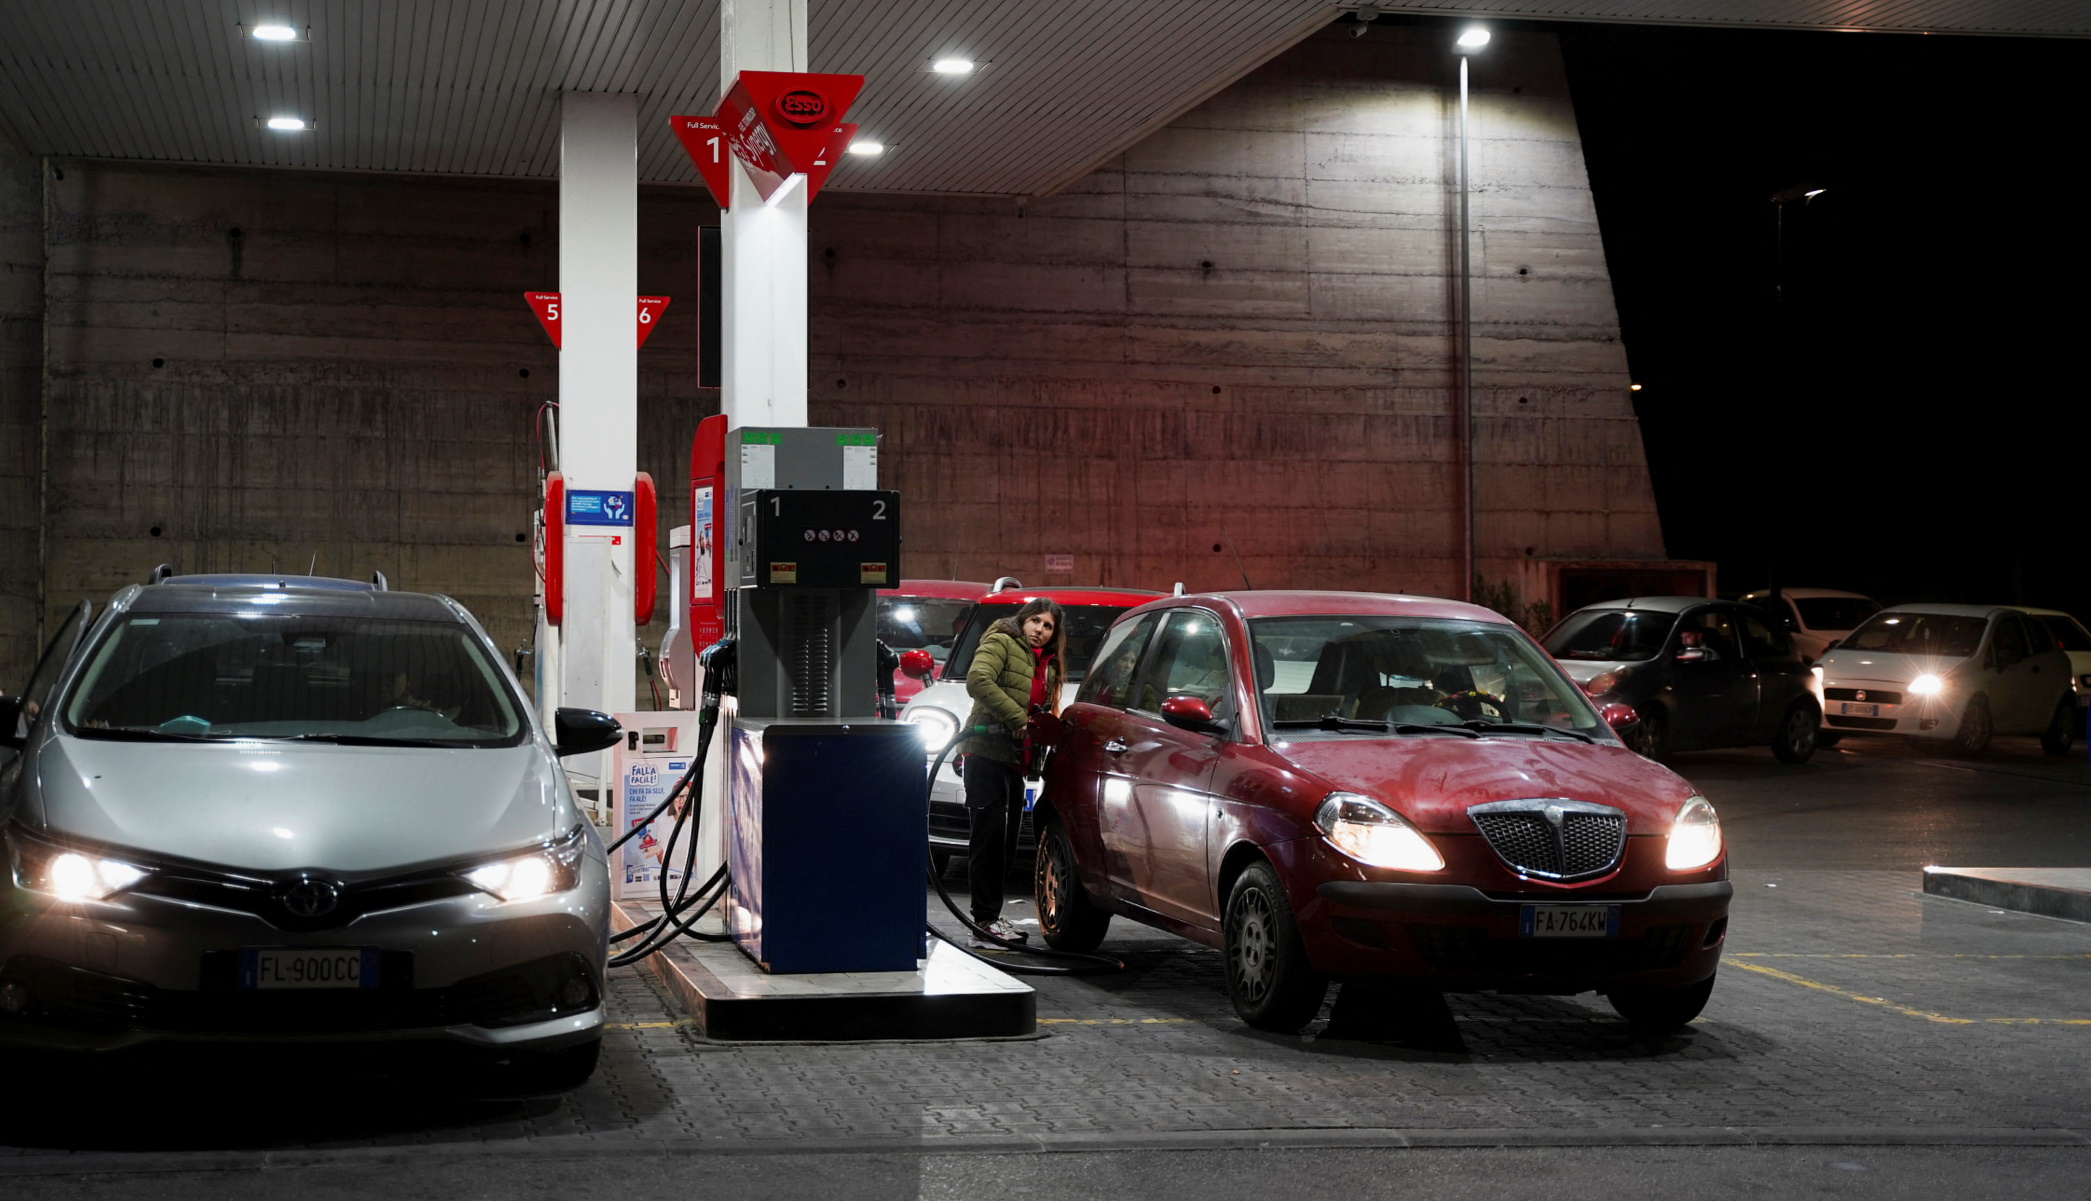 Ιταλία: Πλήρωσαν 9 δισεκατομμύρια ευρώ παραπάνω σε καύσιμα για τα αυτοκίνητα